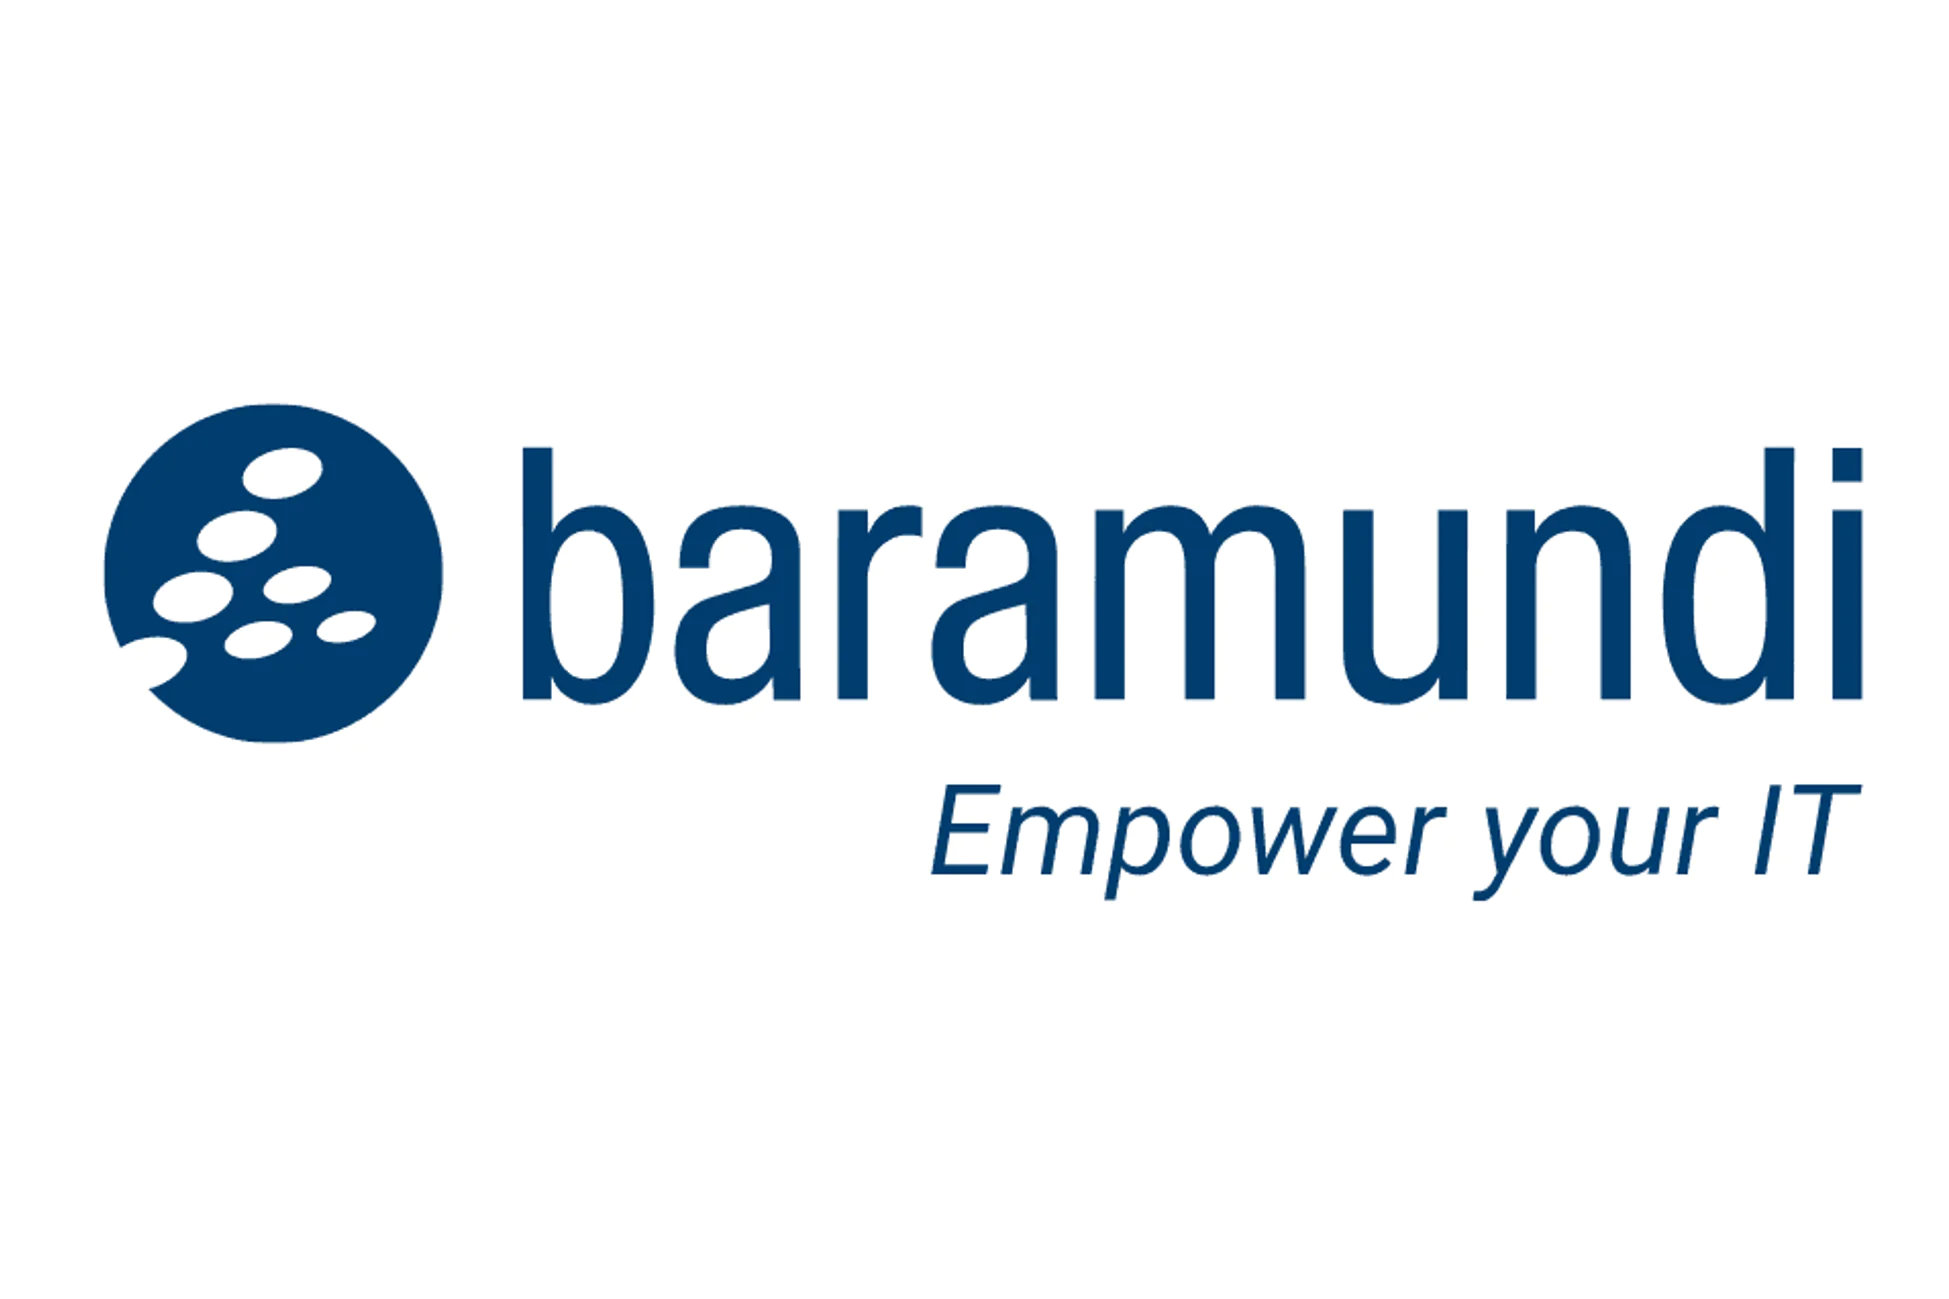 Logo baramundi - Empower your IT